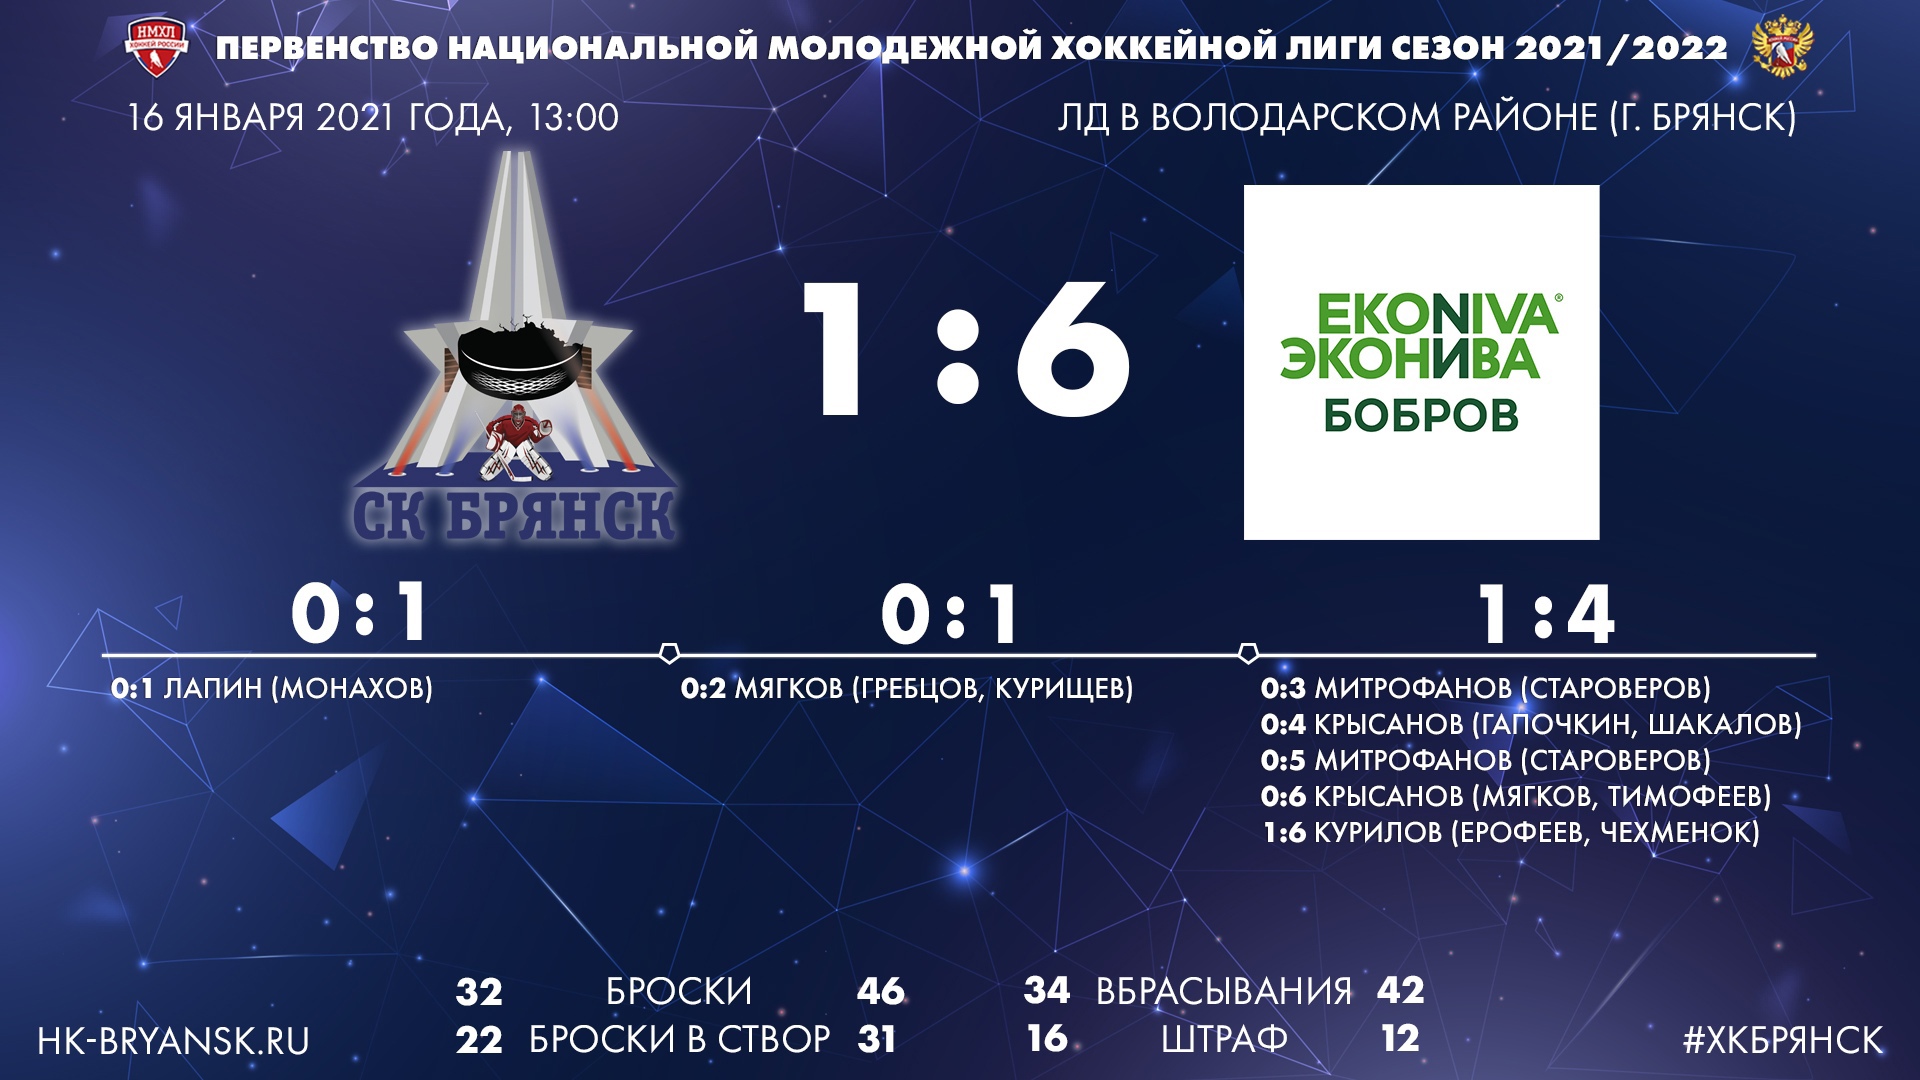 Брянские хоккеисты в стартовом матче года проиграли клубу «ЭкоНива-Бобров»